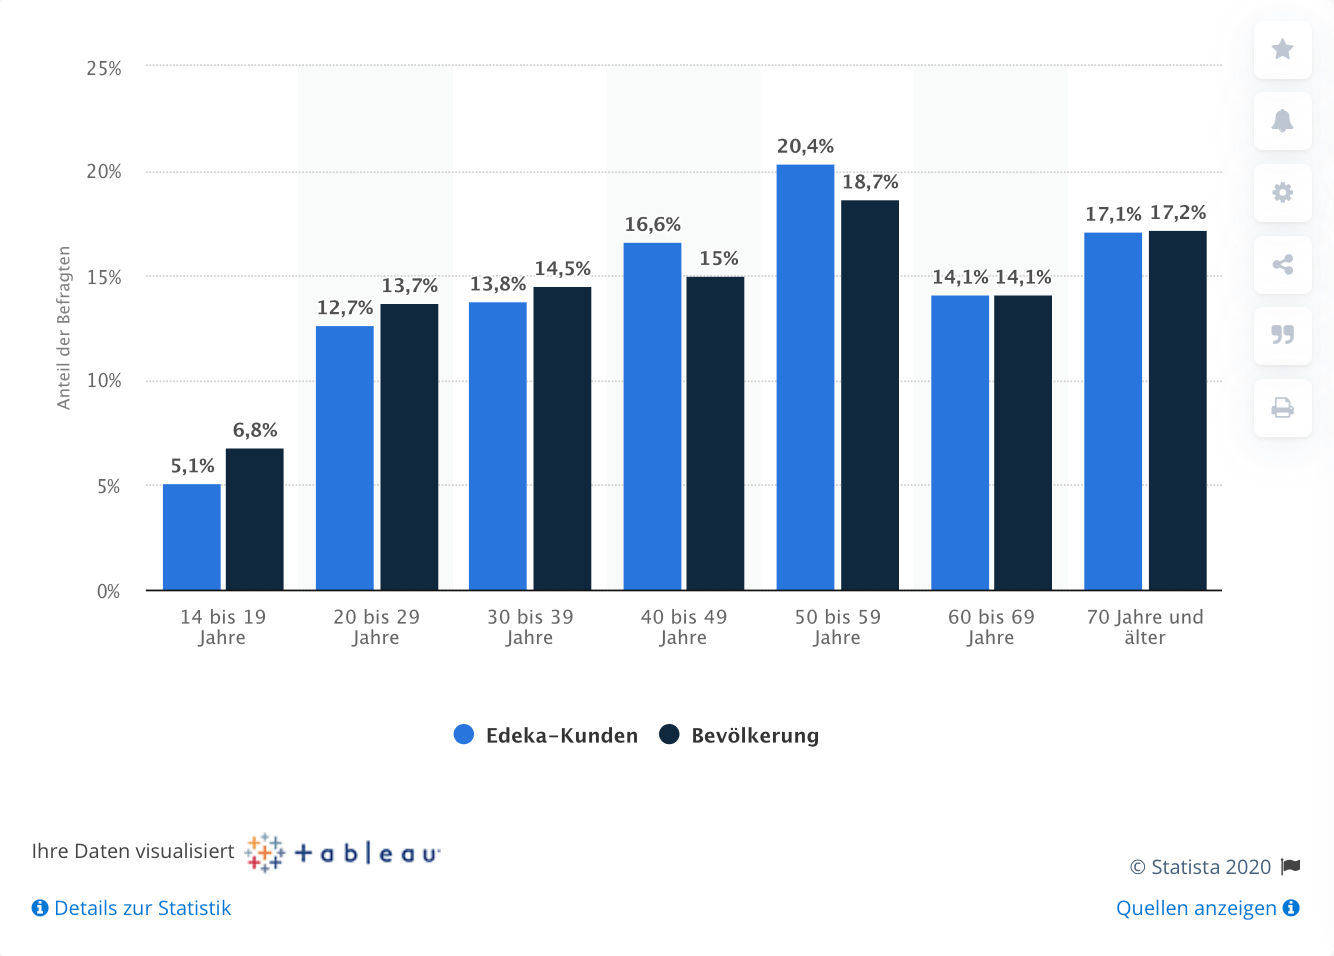 Edeka-Kunden in Deutschland nach Alter im Vergleich mit der Bevölkerung im Jahr 2019